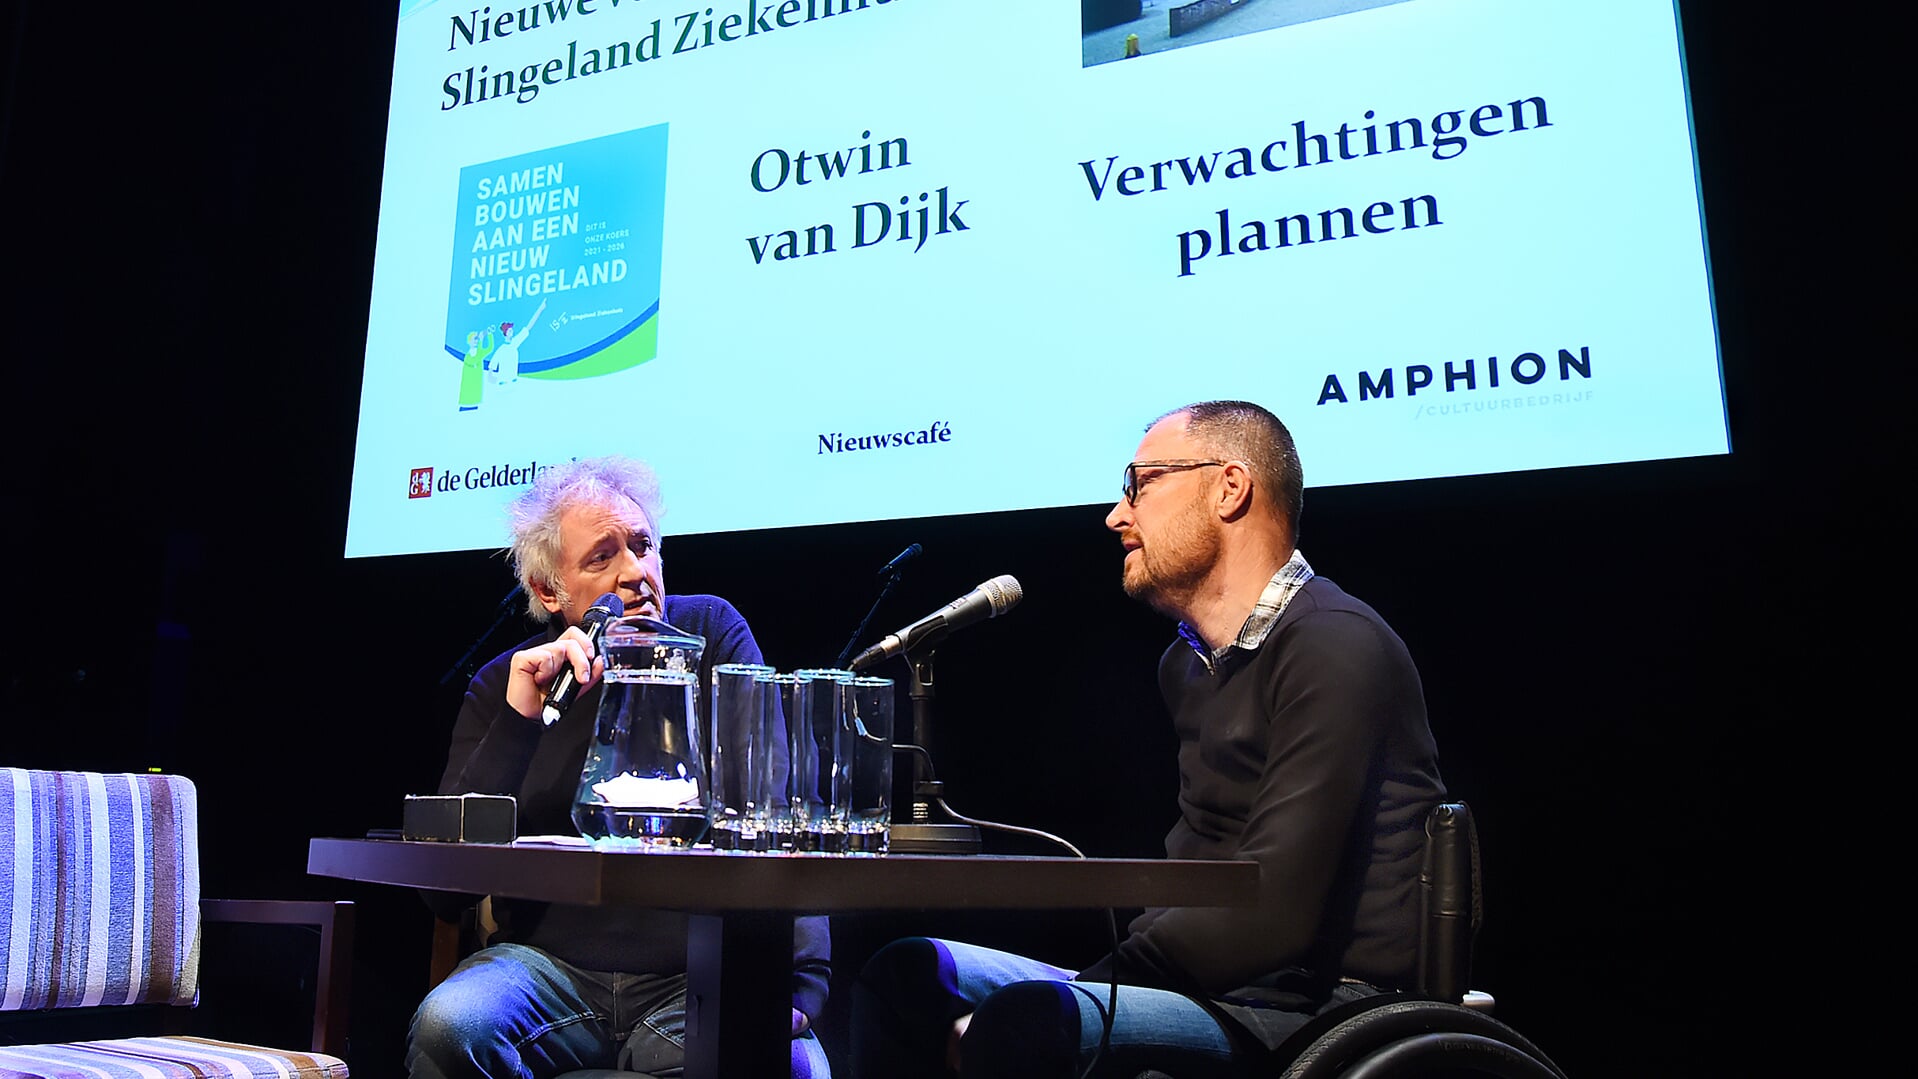 Henny Haggeman en Otwin van Dijk tijdens het vorige Nieuwscafé. Archieffoto: Roel Kleinpenning